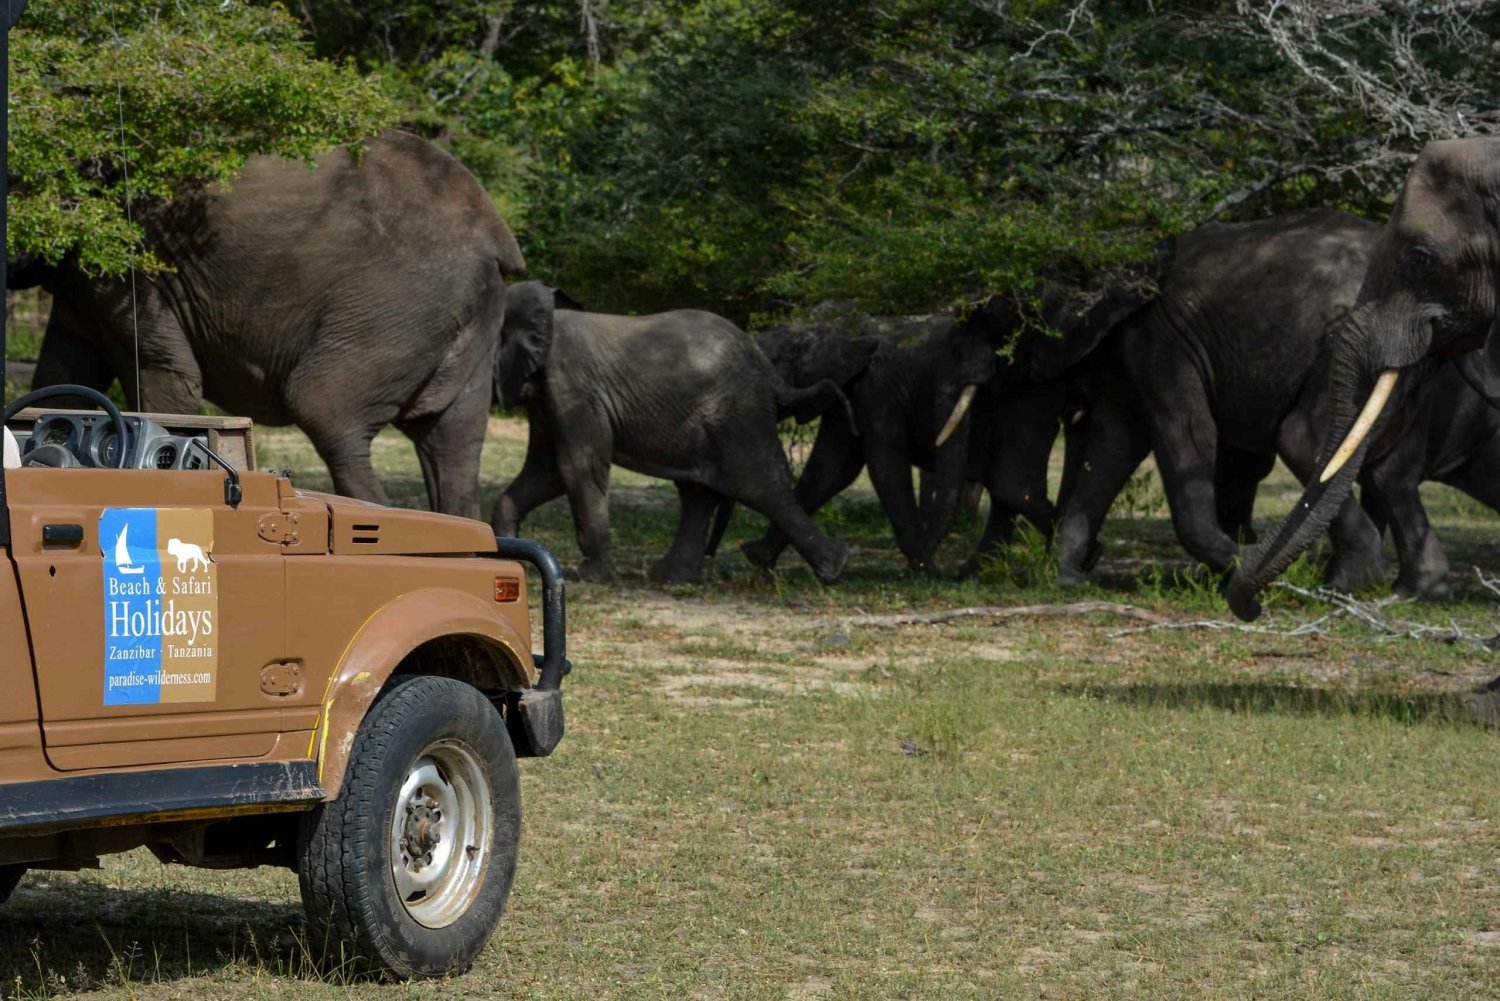 Sansibarilta: Selous Game Reserve päiväsafari lentojen kanssa